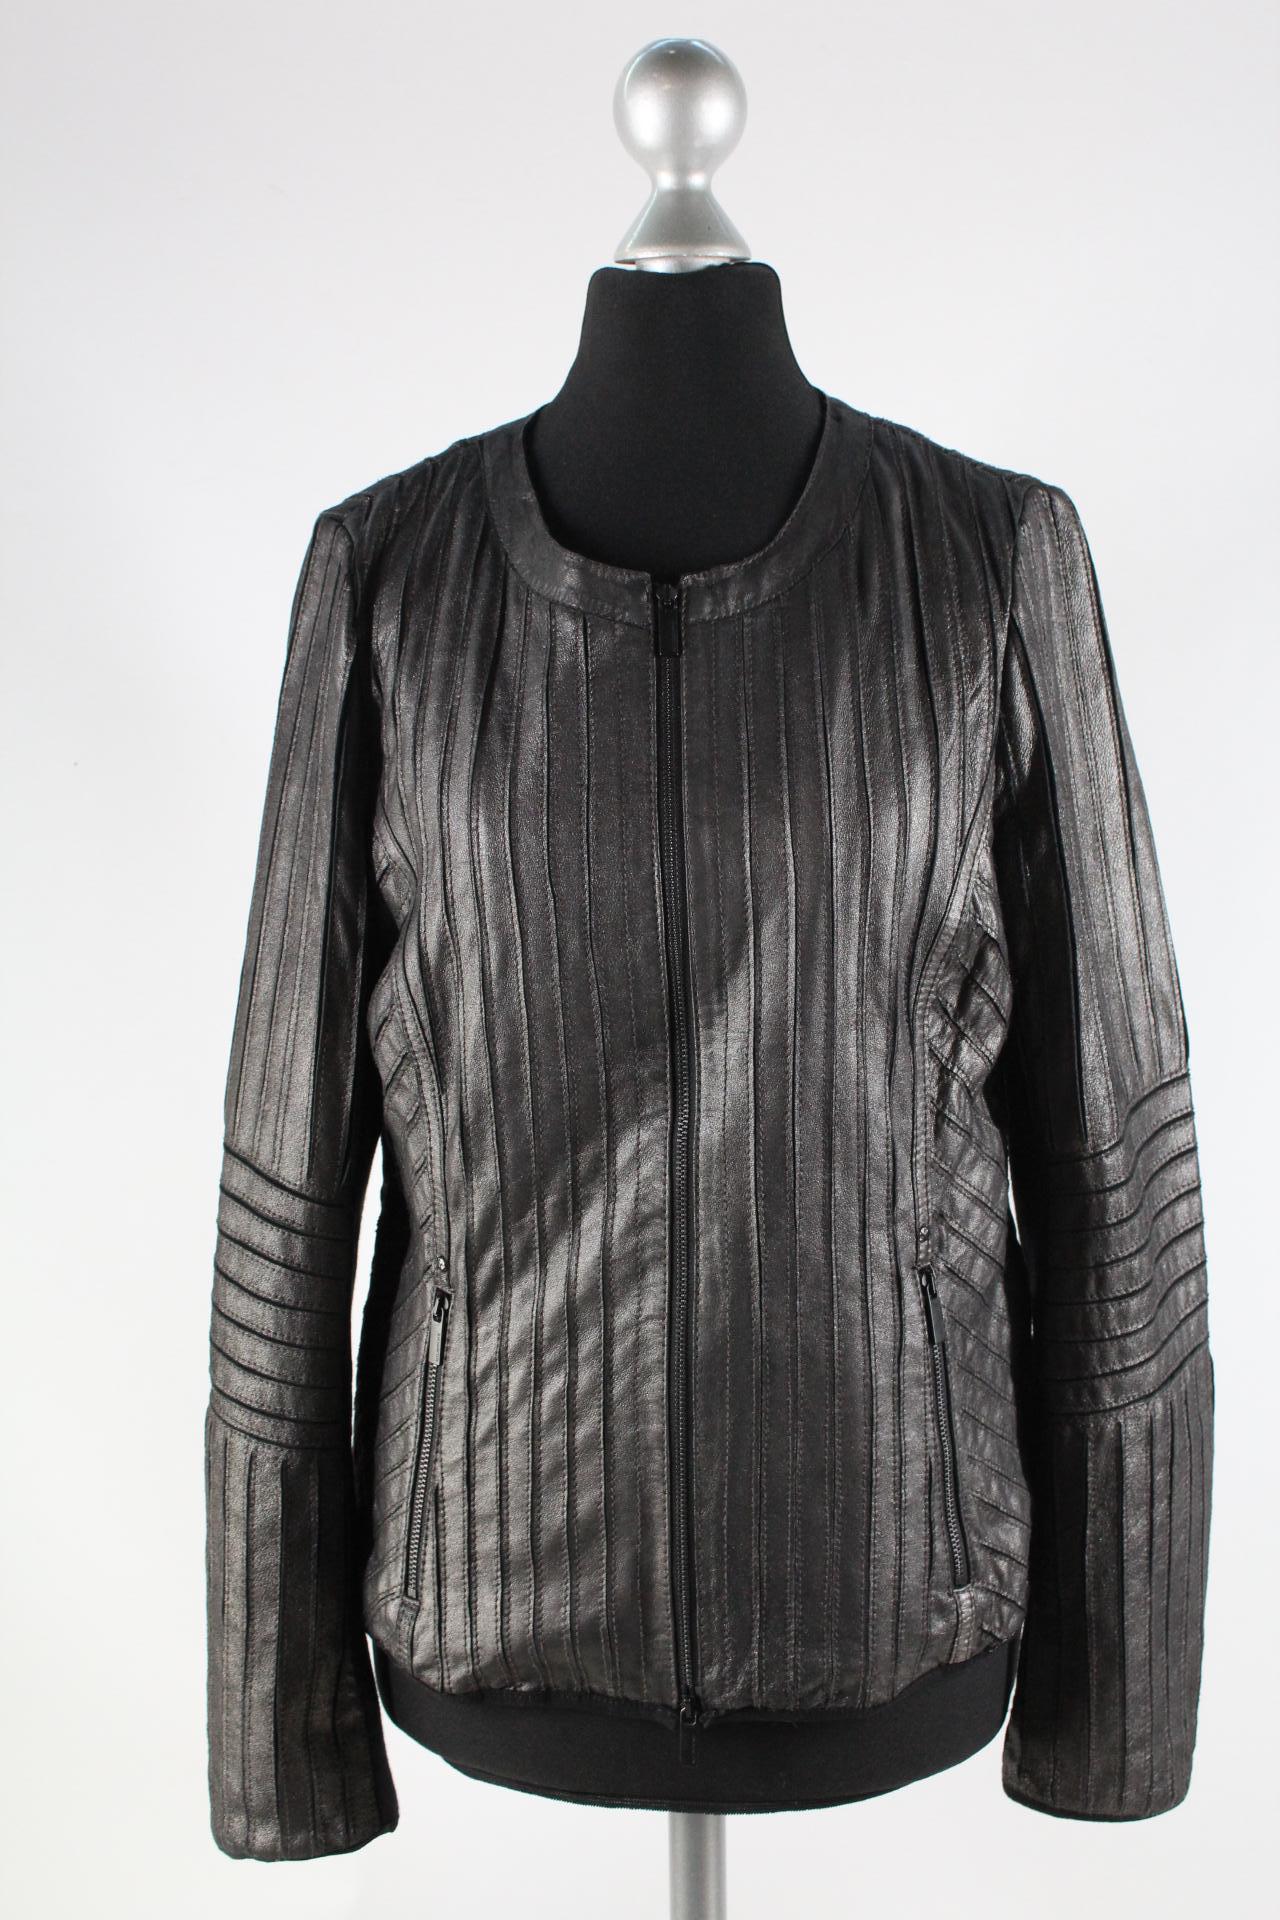 Milestone Damen-Lederjacke schwarzgrau Größe 40 